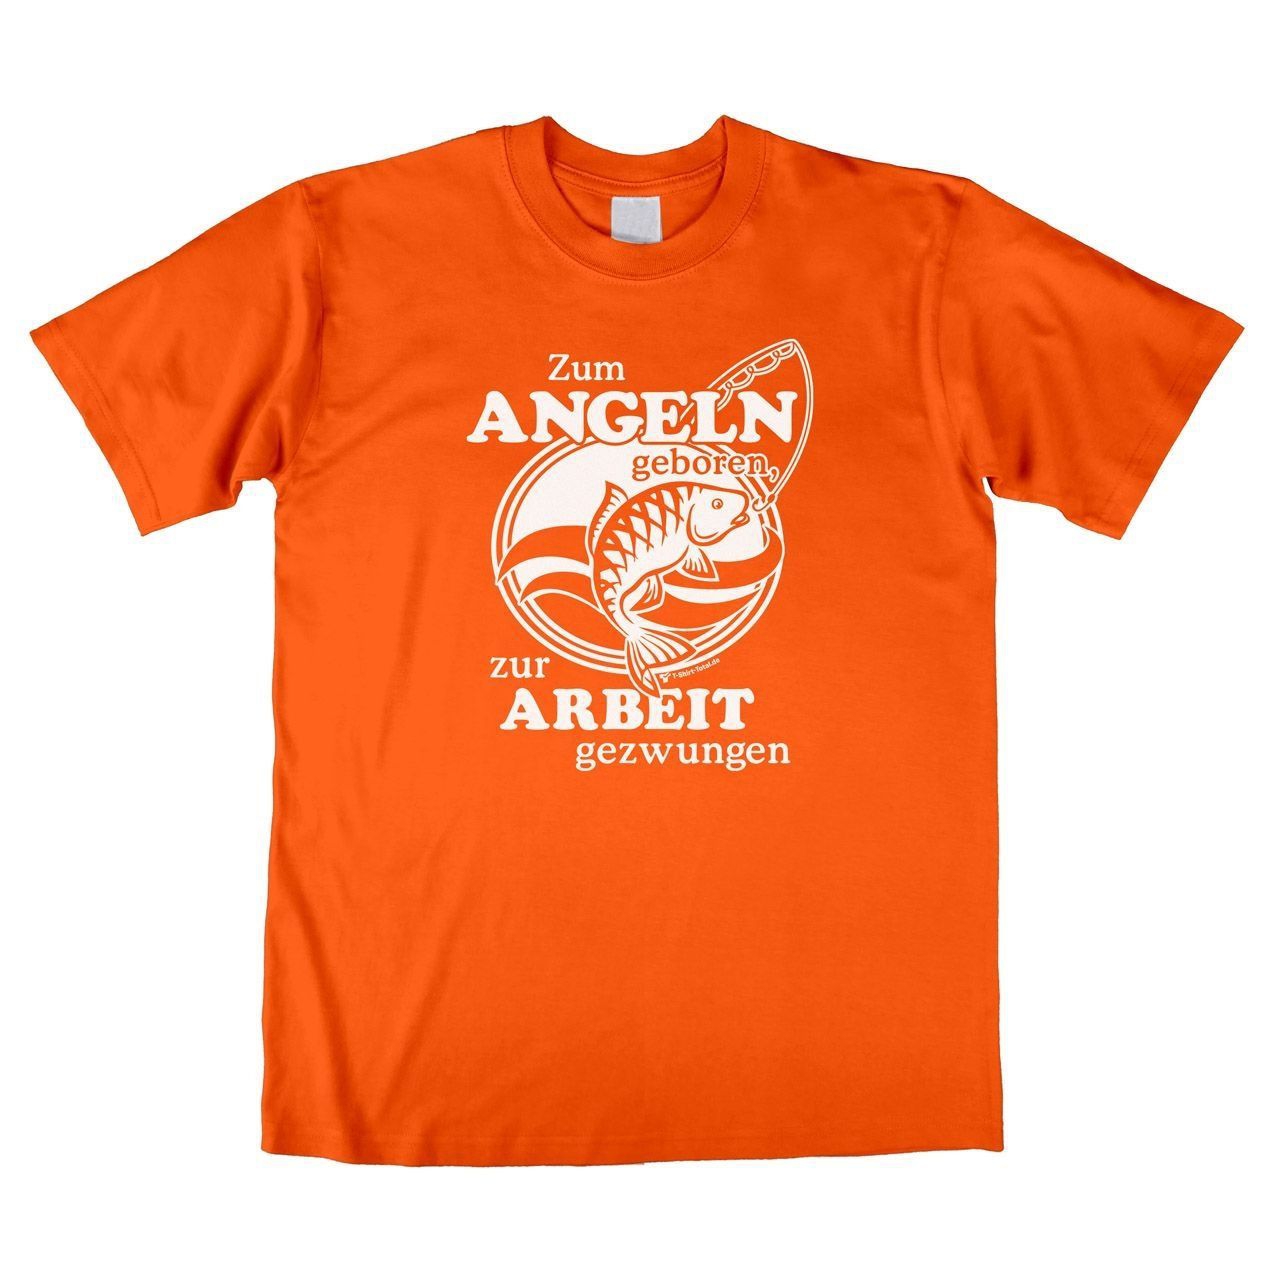 Zum Angeln geboren Unisex T-Shirt orange Large